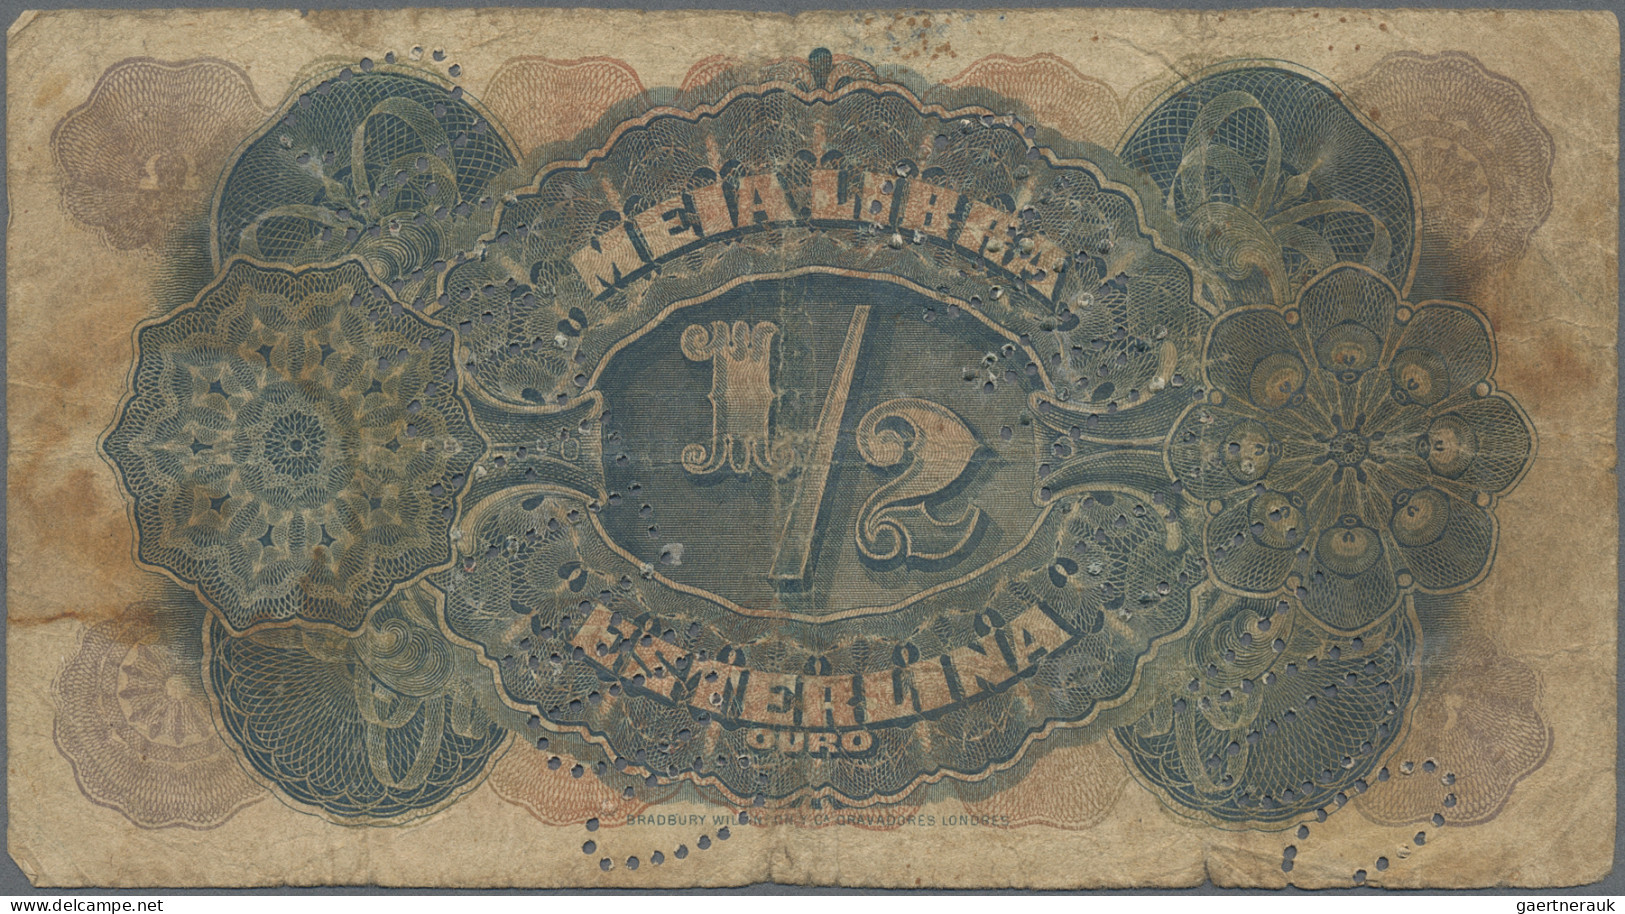 Mozambique: Companhía de Moçambique, lot with 4 banknotes, 1919-1933 series, wit